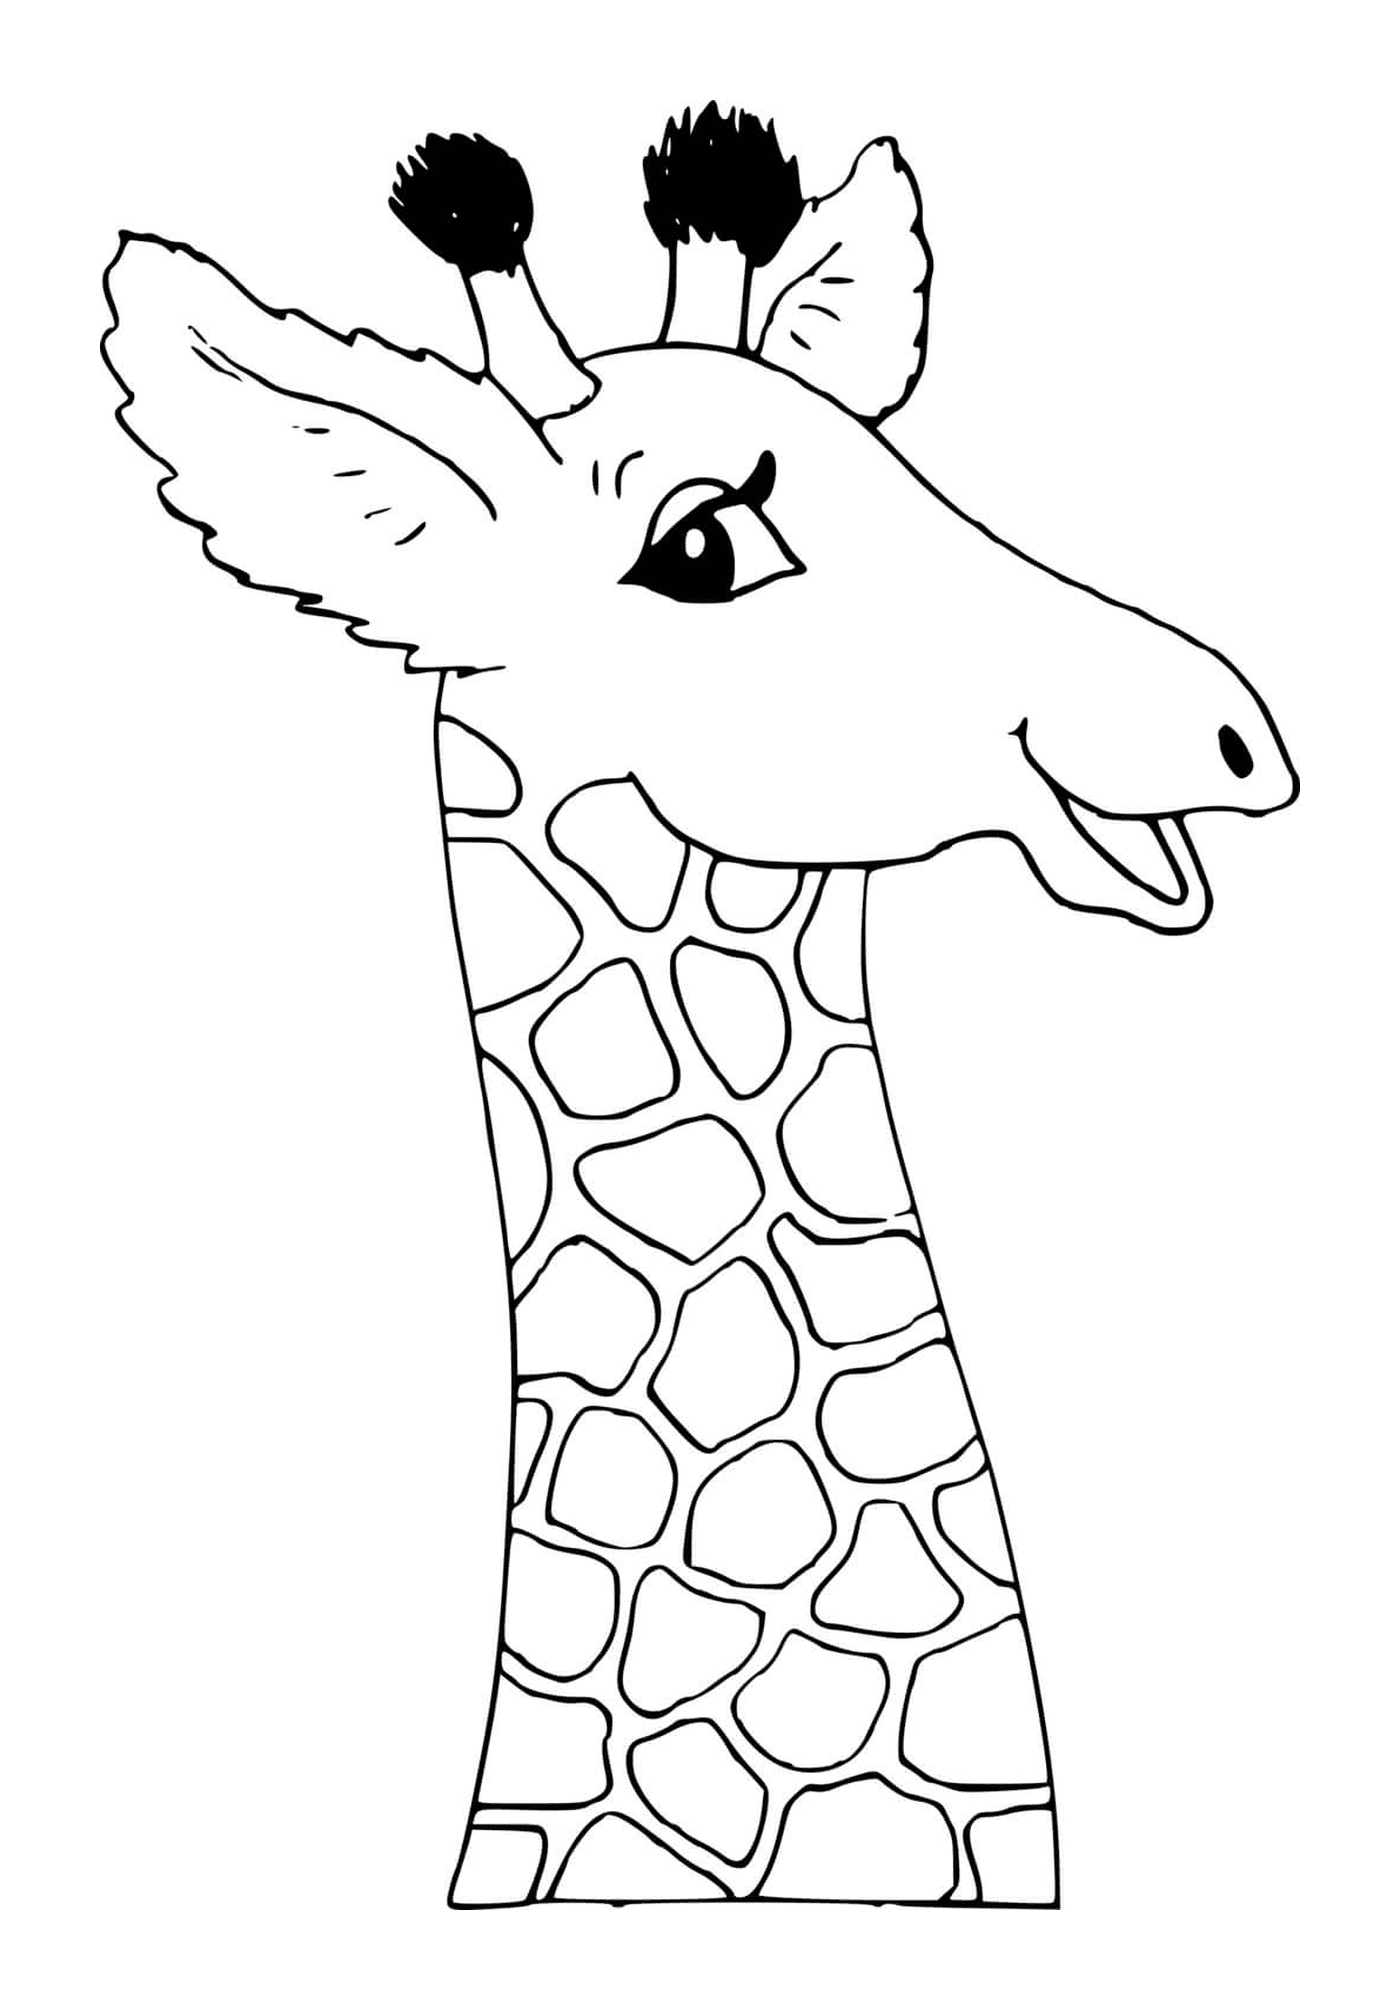  Hals und Kopf einer Giraffe 